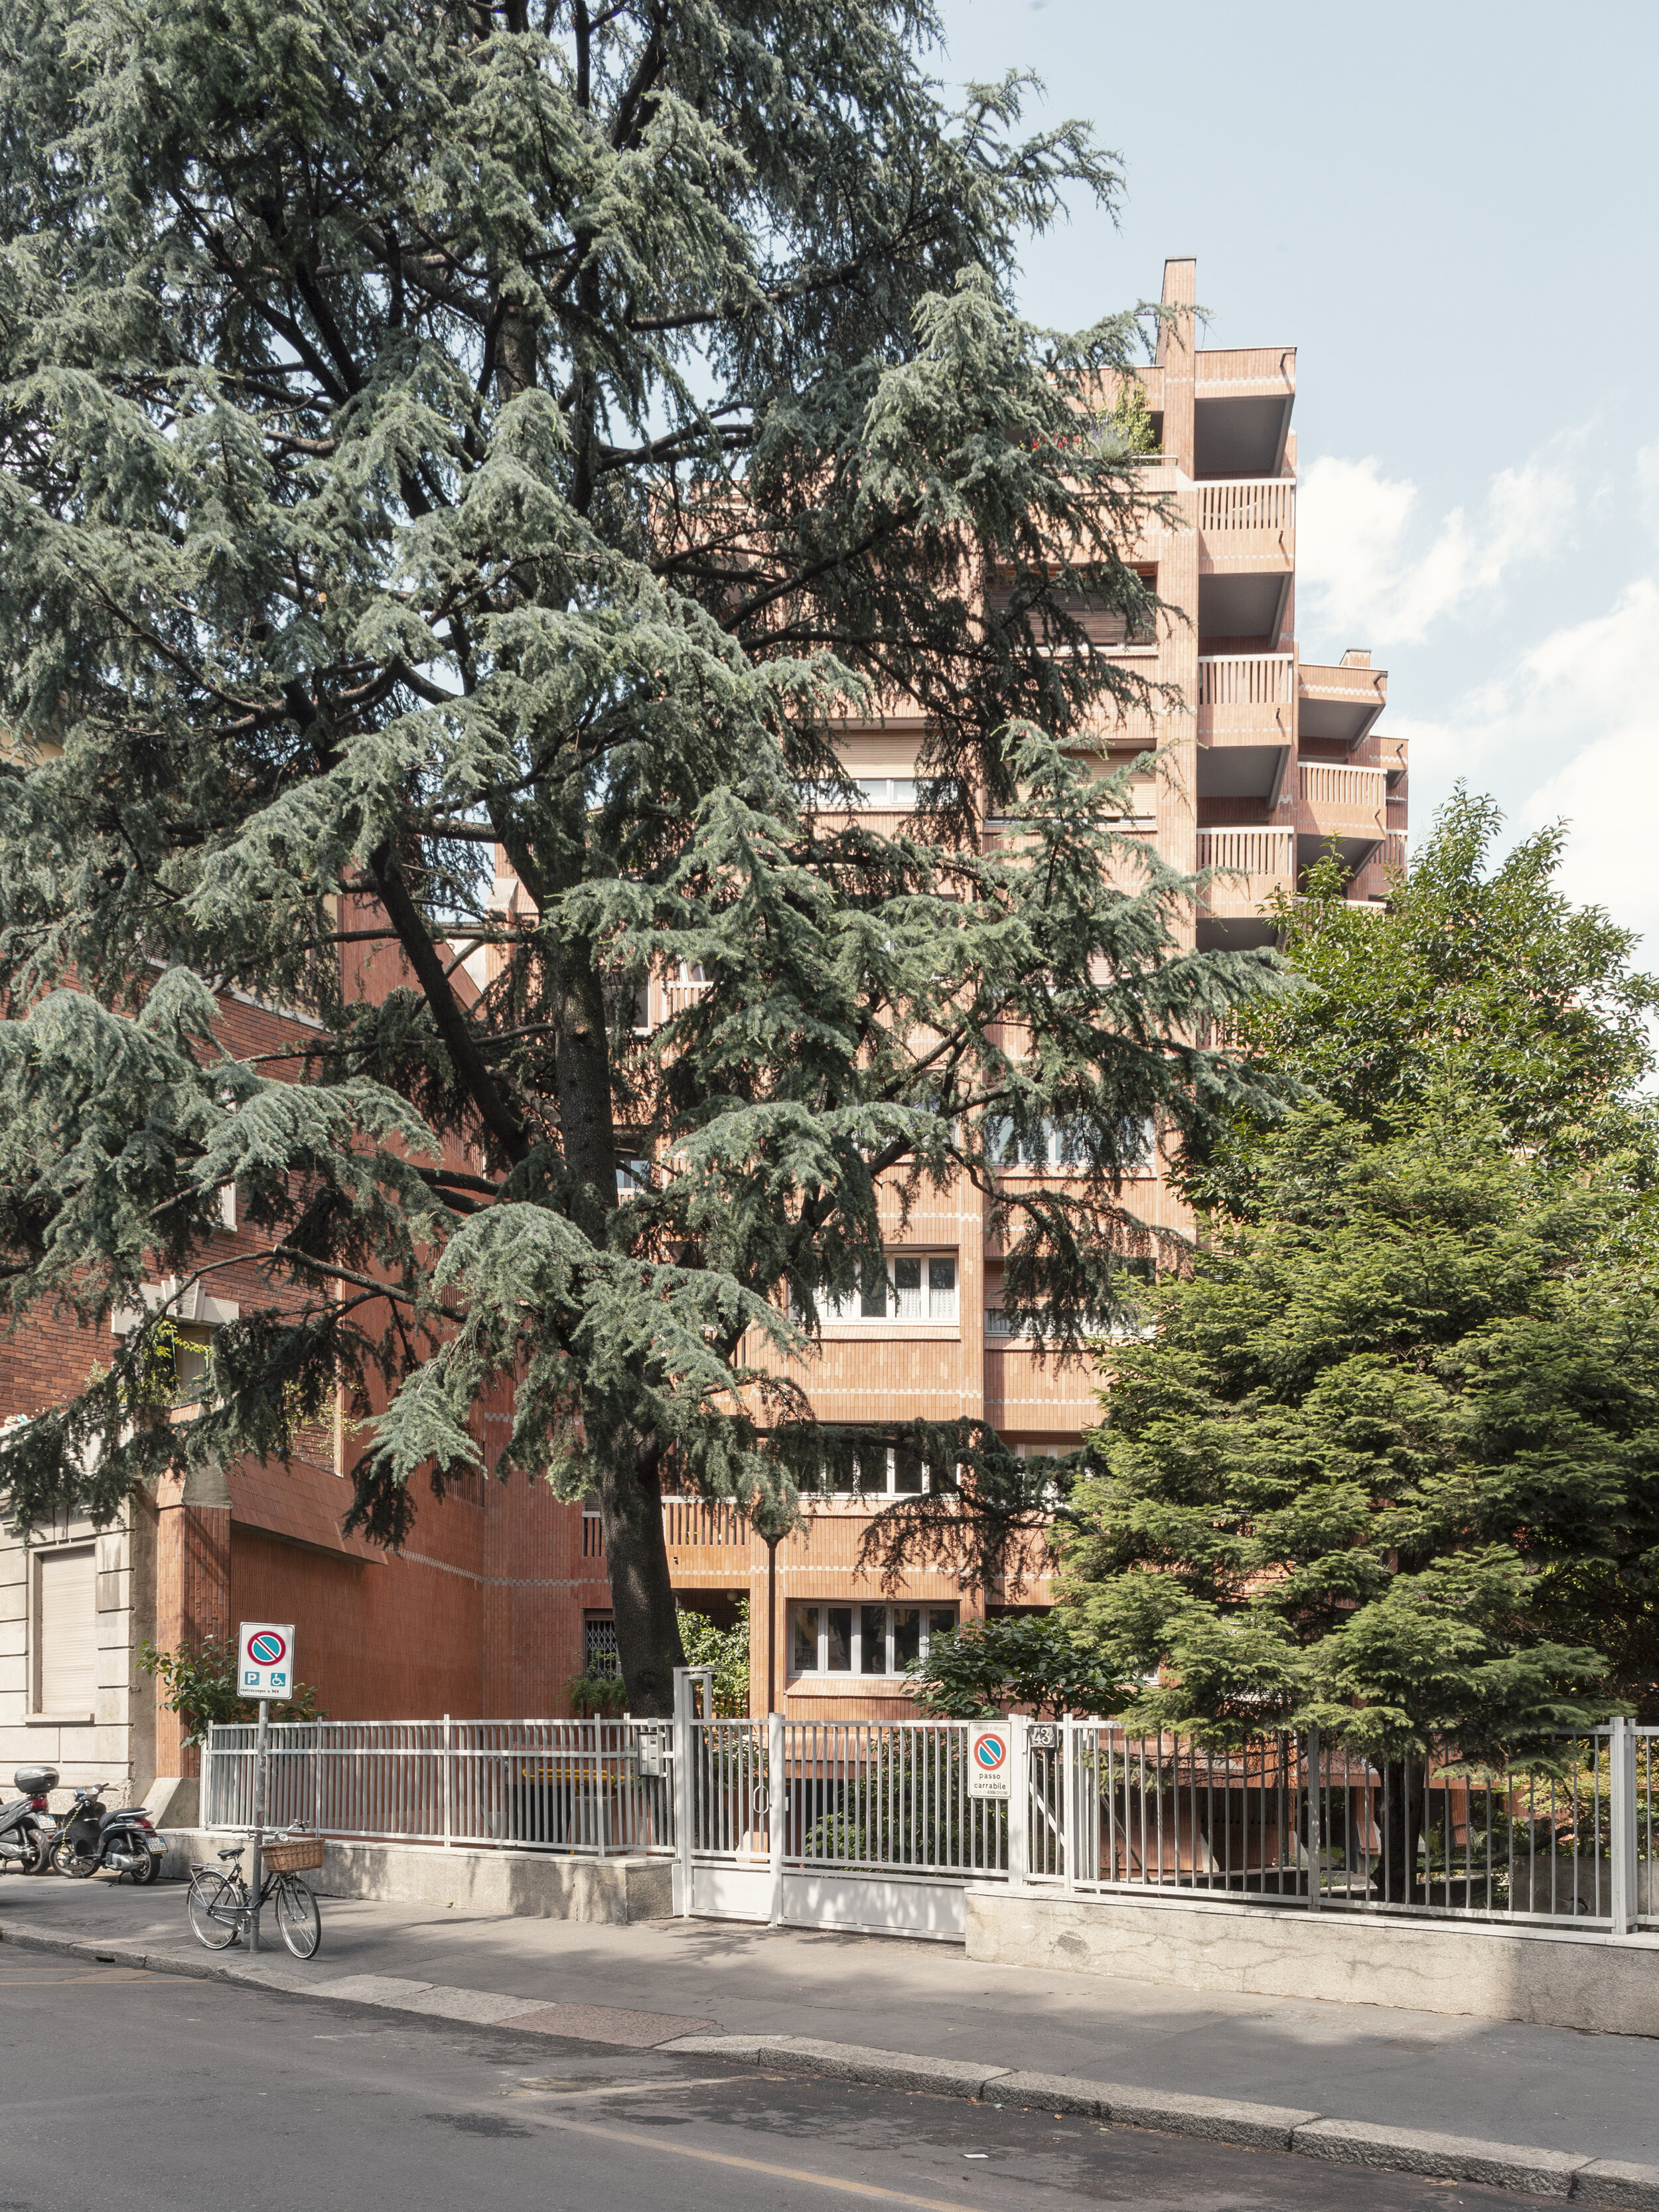 Gian Paolo Valenti - Residential Building Via Botta 43